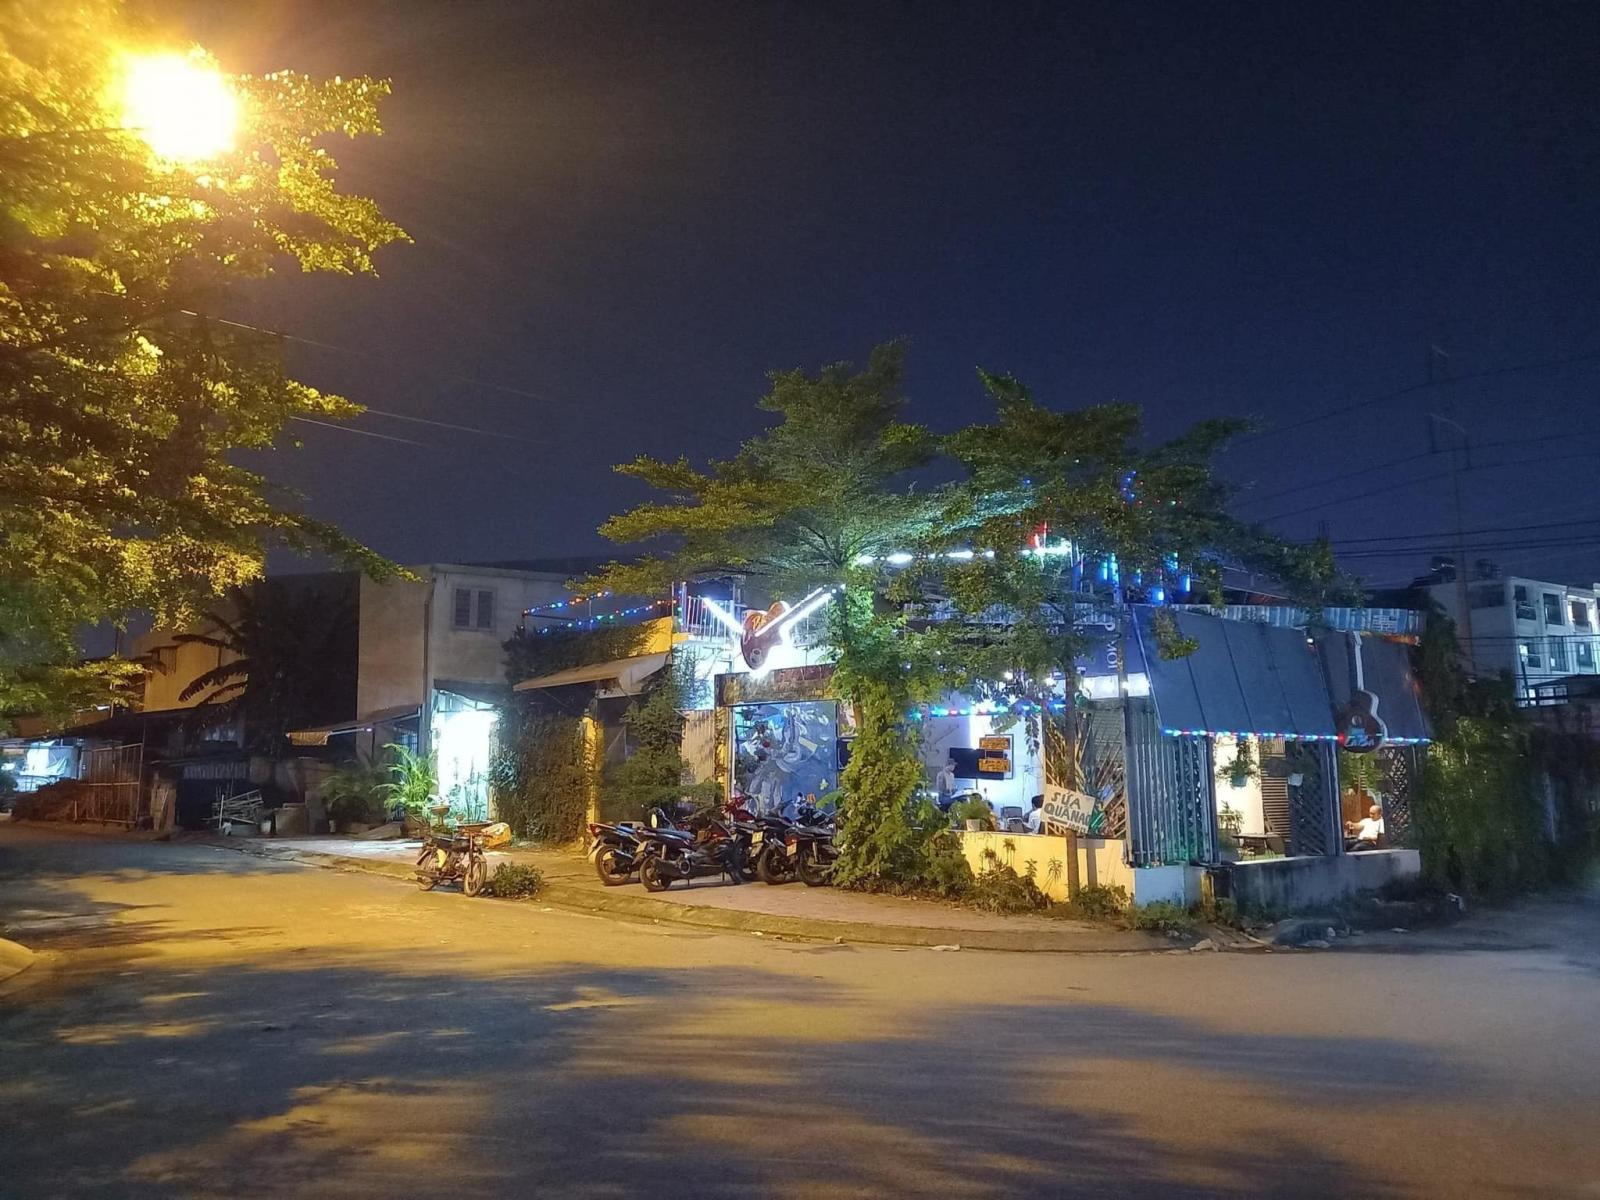 SANG QUÁN CAFE NHẠC QUẬN BÌNH THẠNH gần cầu bình lợi khu Đại học Văn Lang 13830107